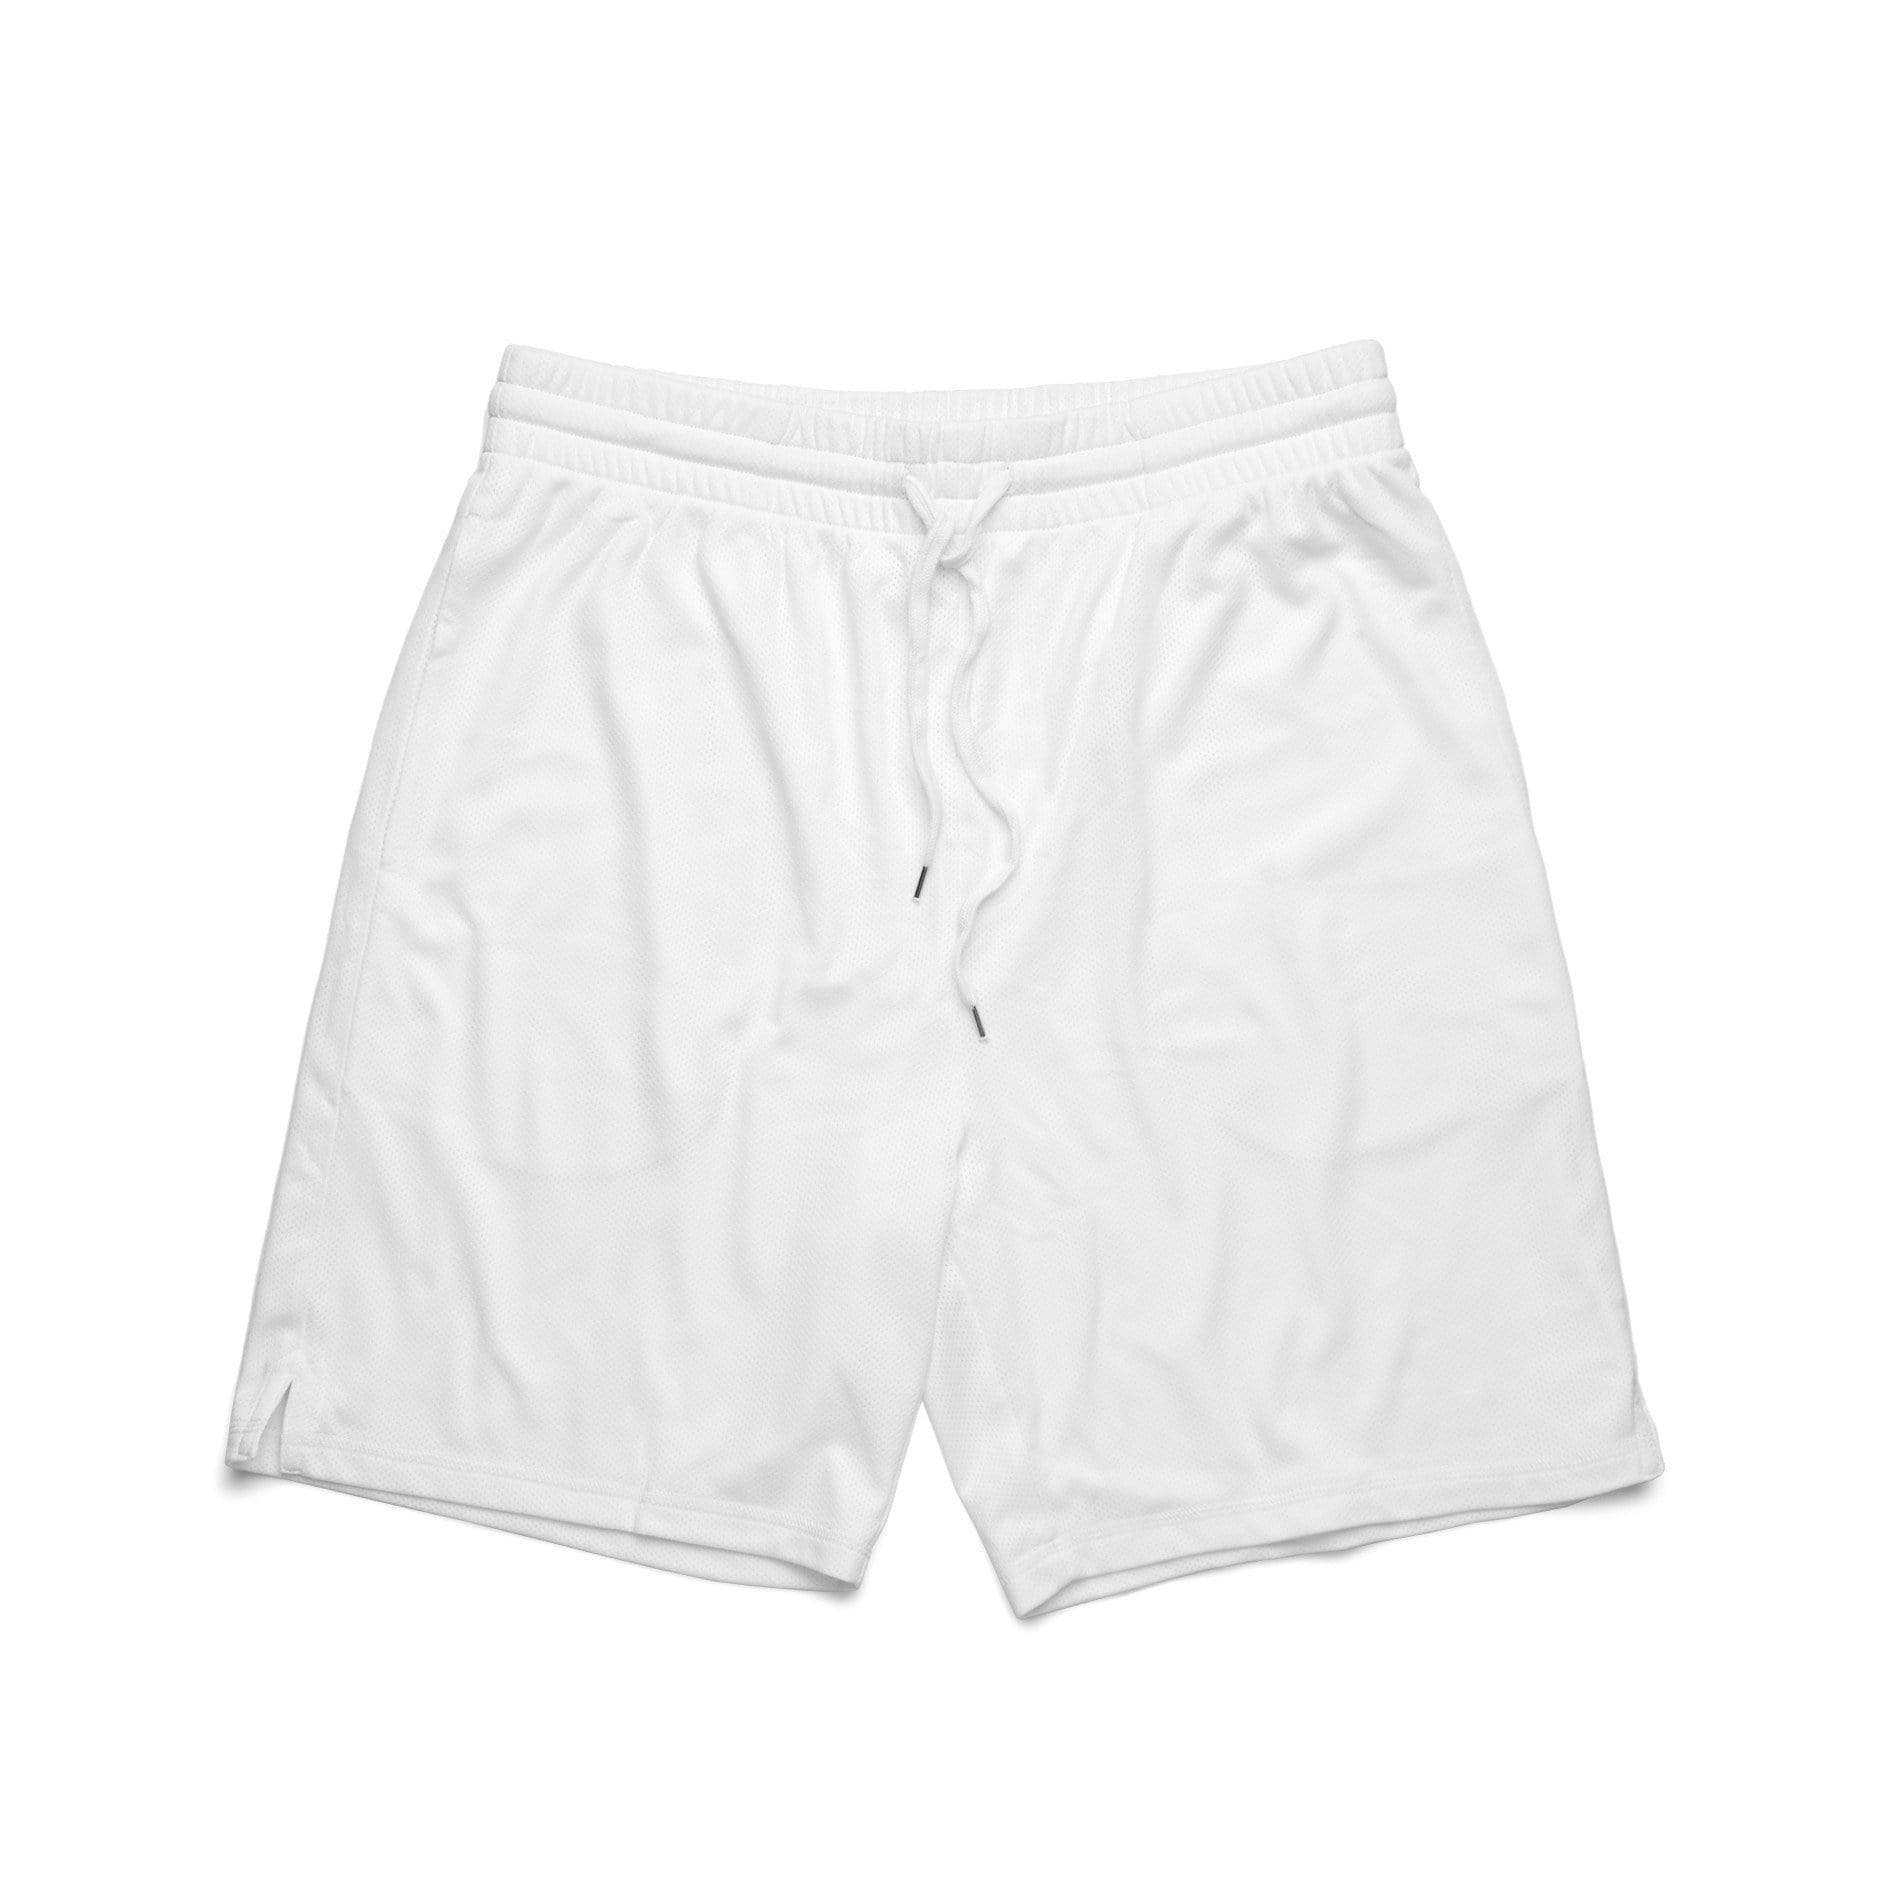 As Colour Active Wear WHITE / SML As Colour Men's court shorts 5910